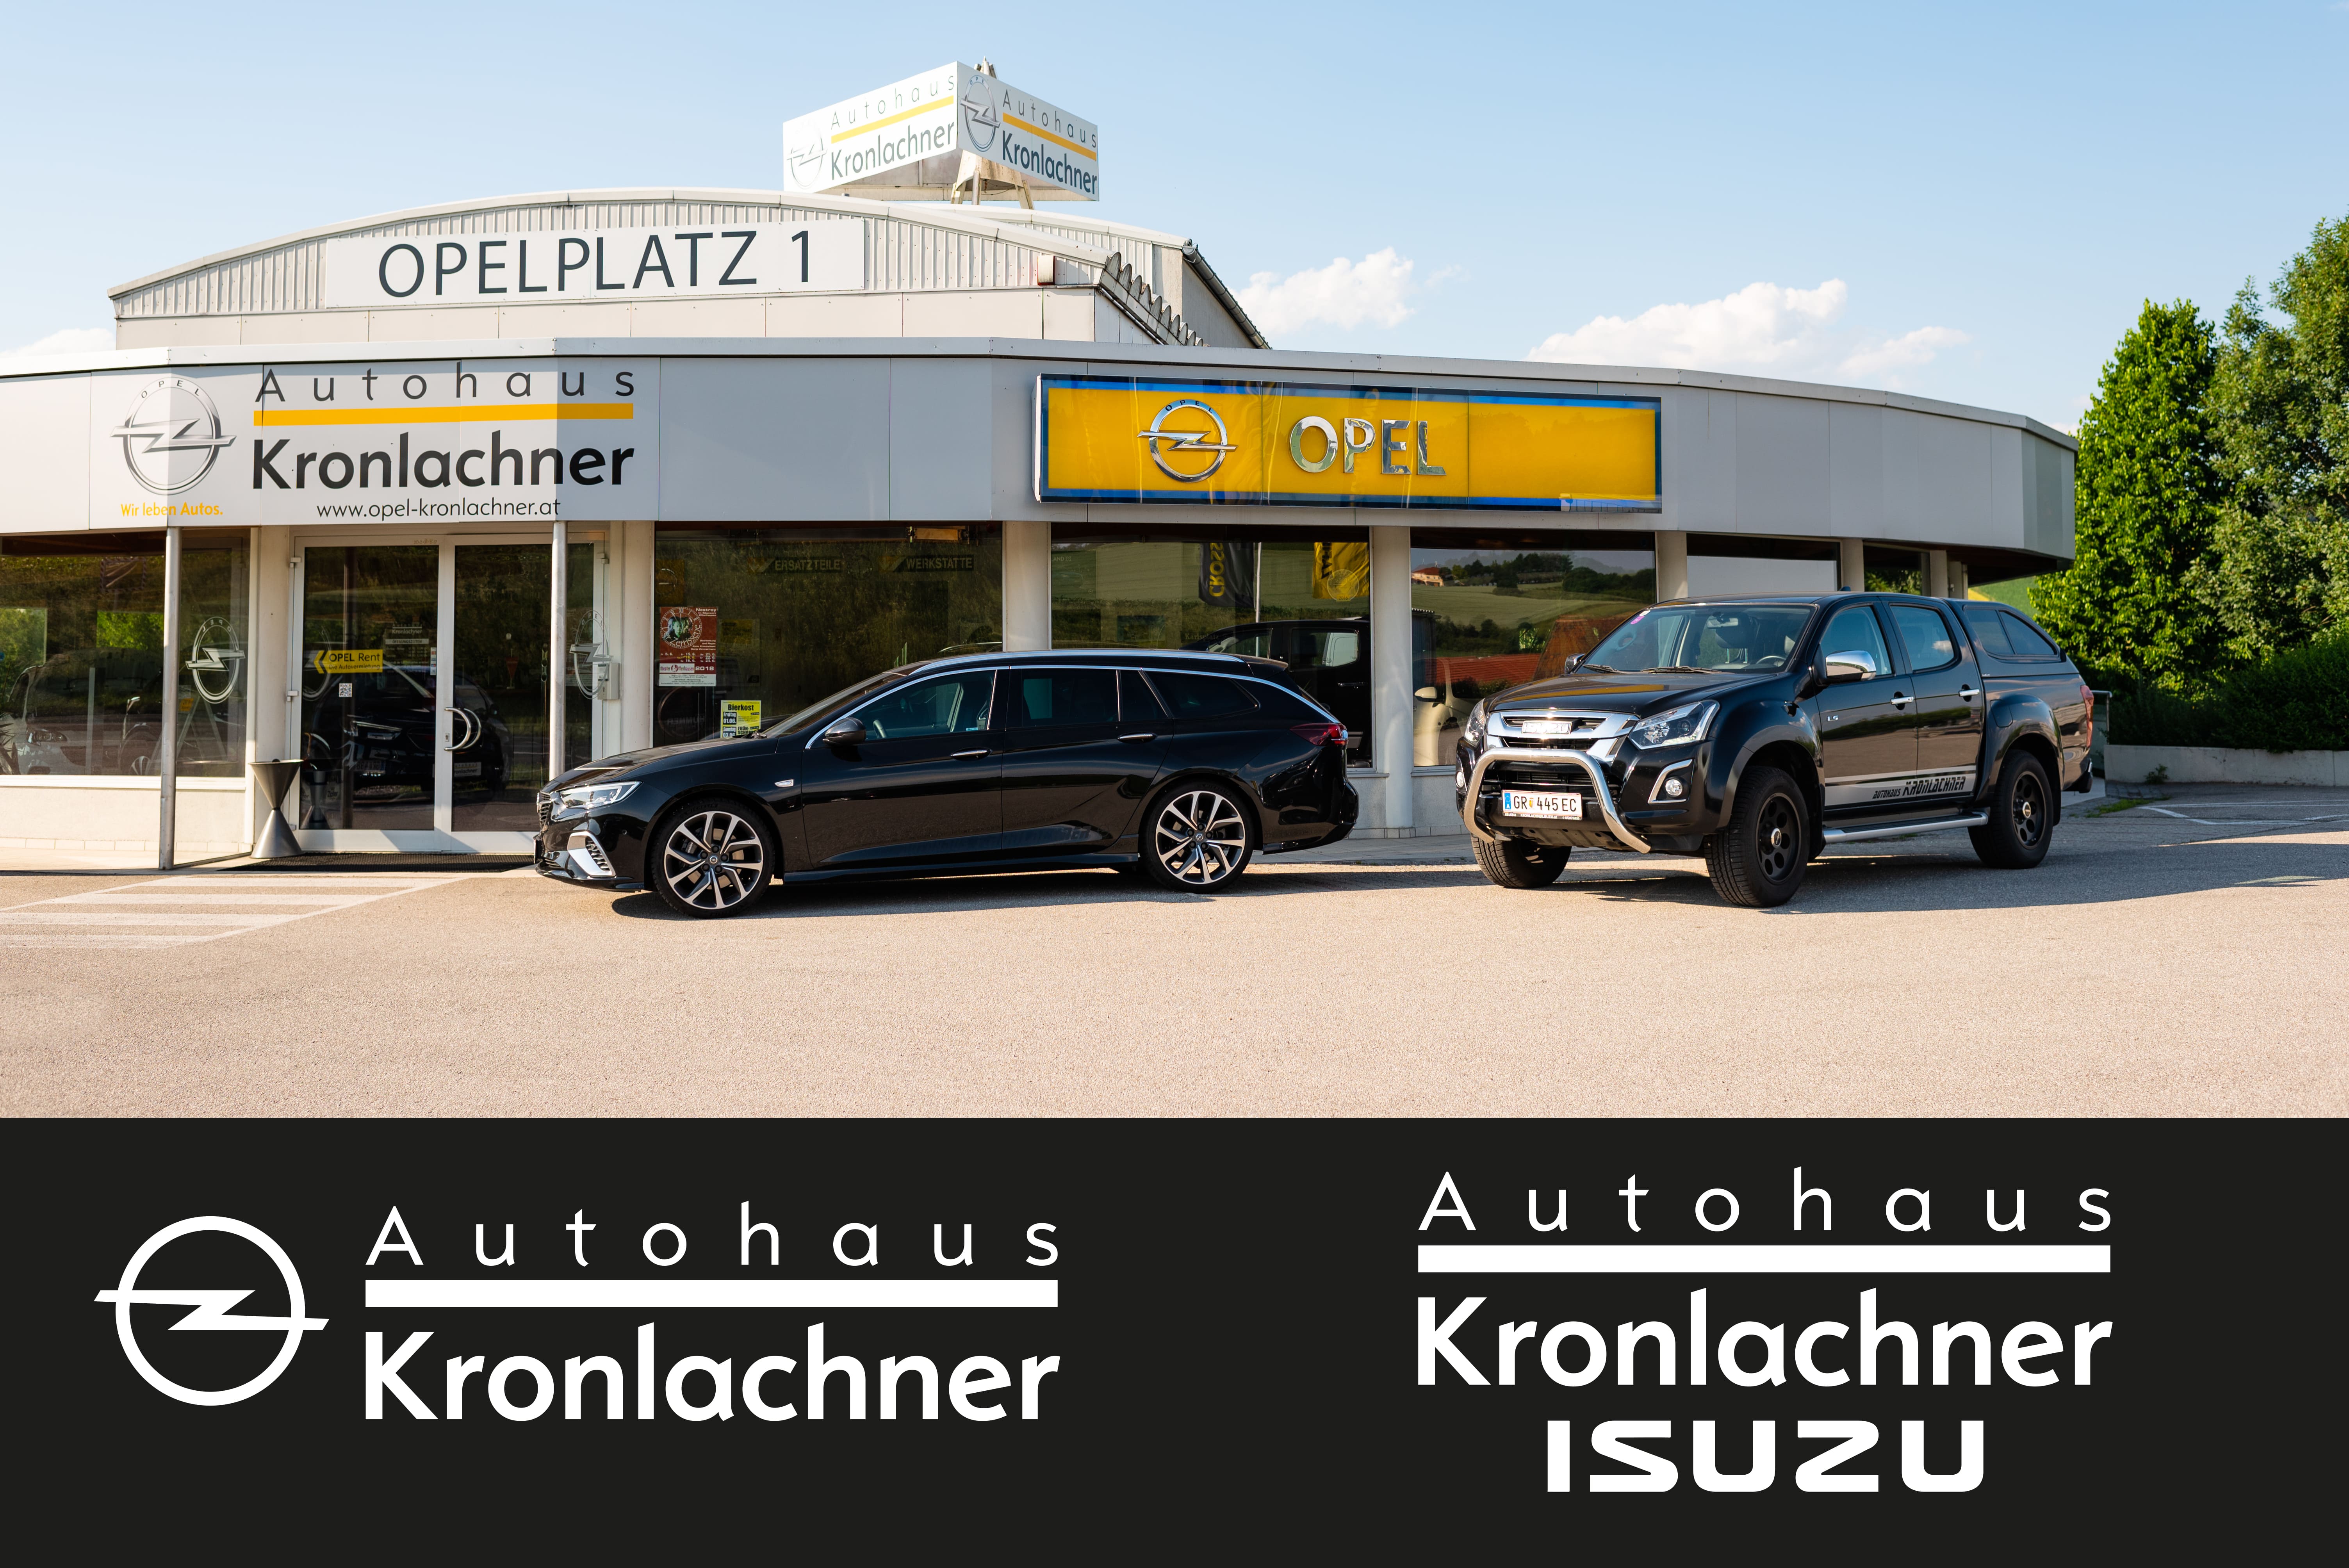 Opel Kronlachner